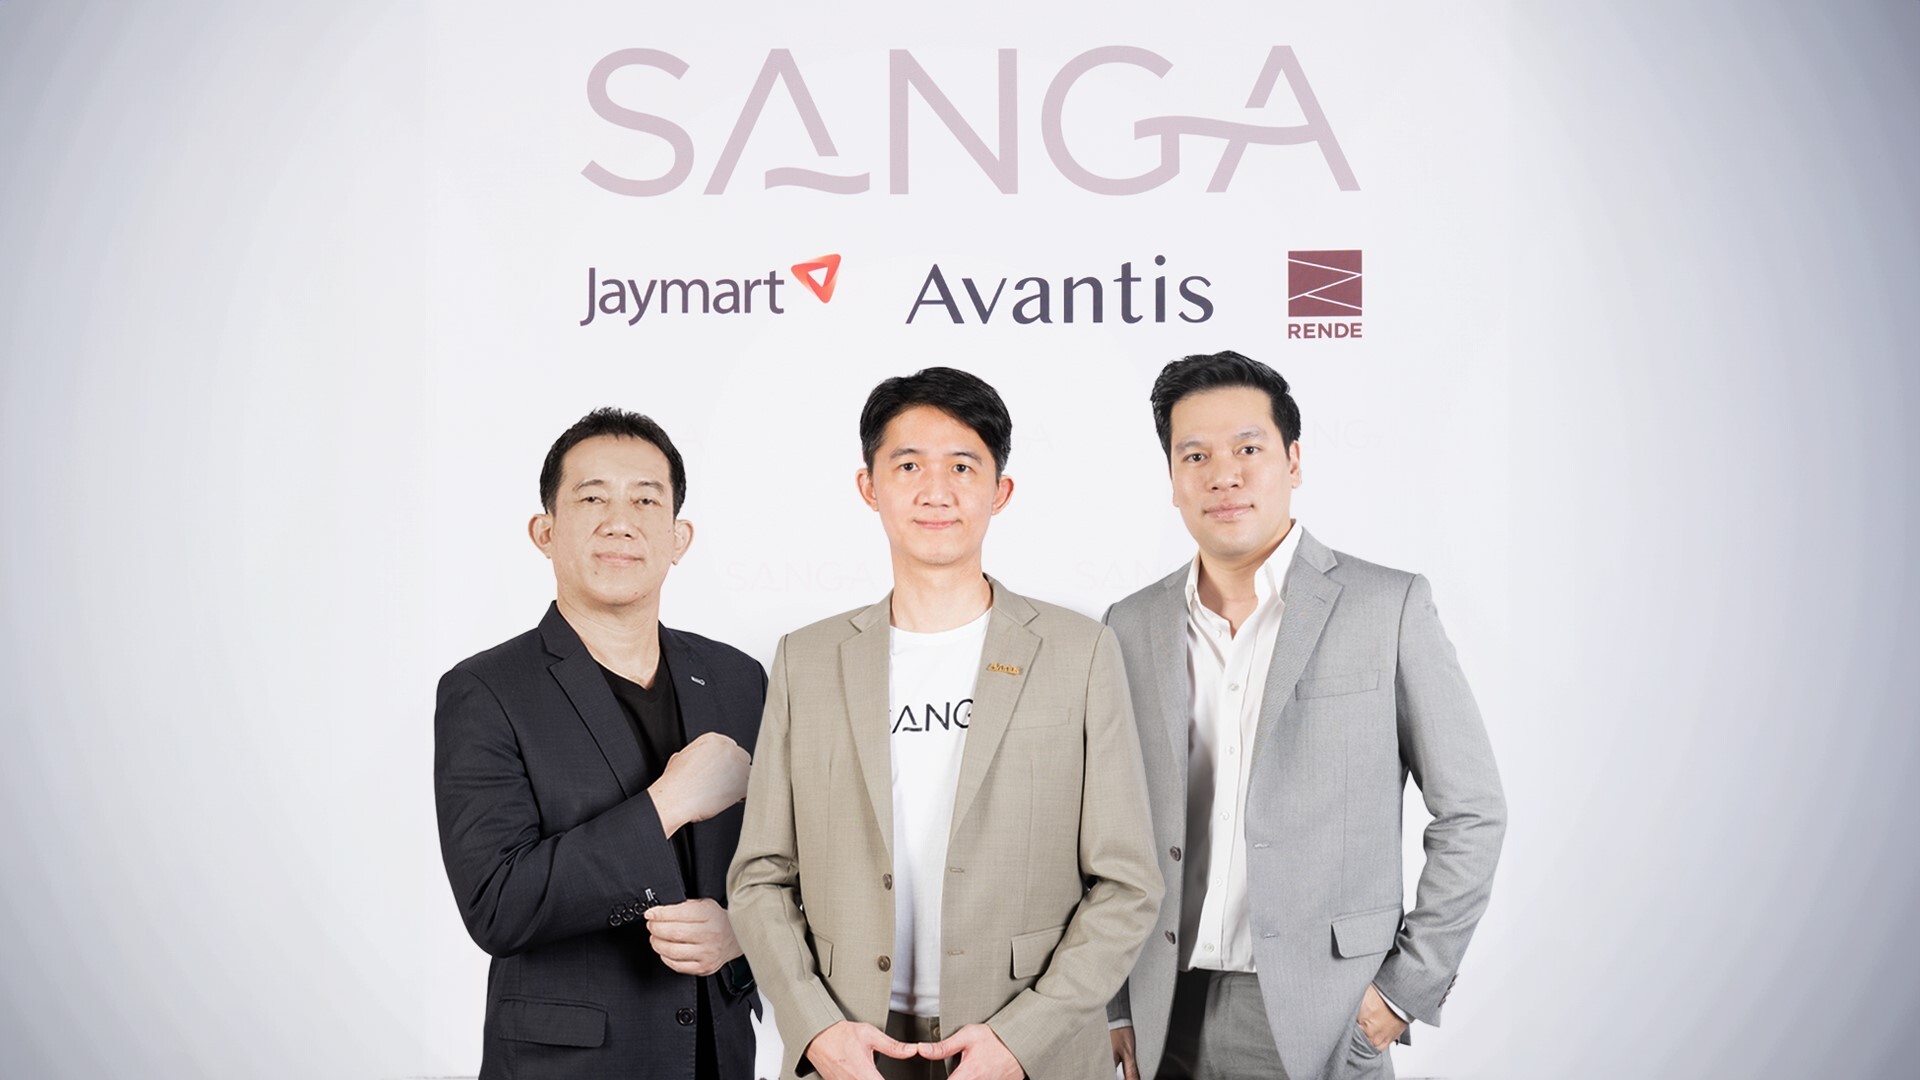 จับตา Avantis ระดมทุน 100 ล้านบาท พัฒนา SANGA ตอบโจทย์การลงทุนอสังหาฯและไลฟ์สไตล์ครั้งแรกของไทย